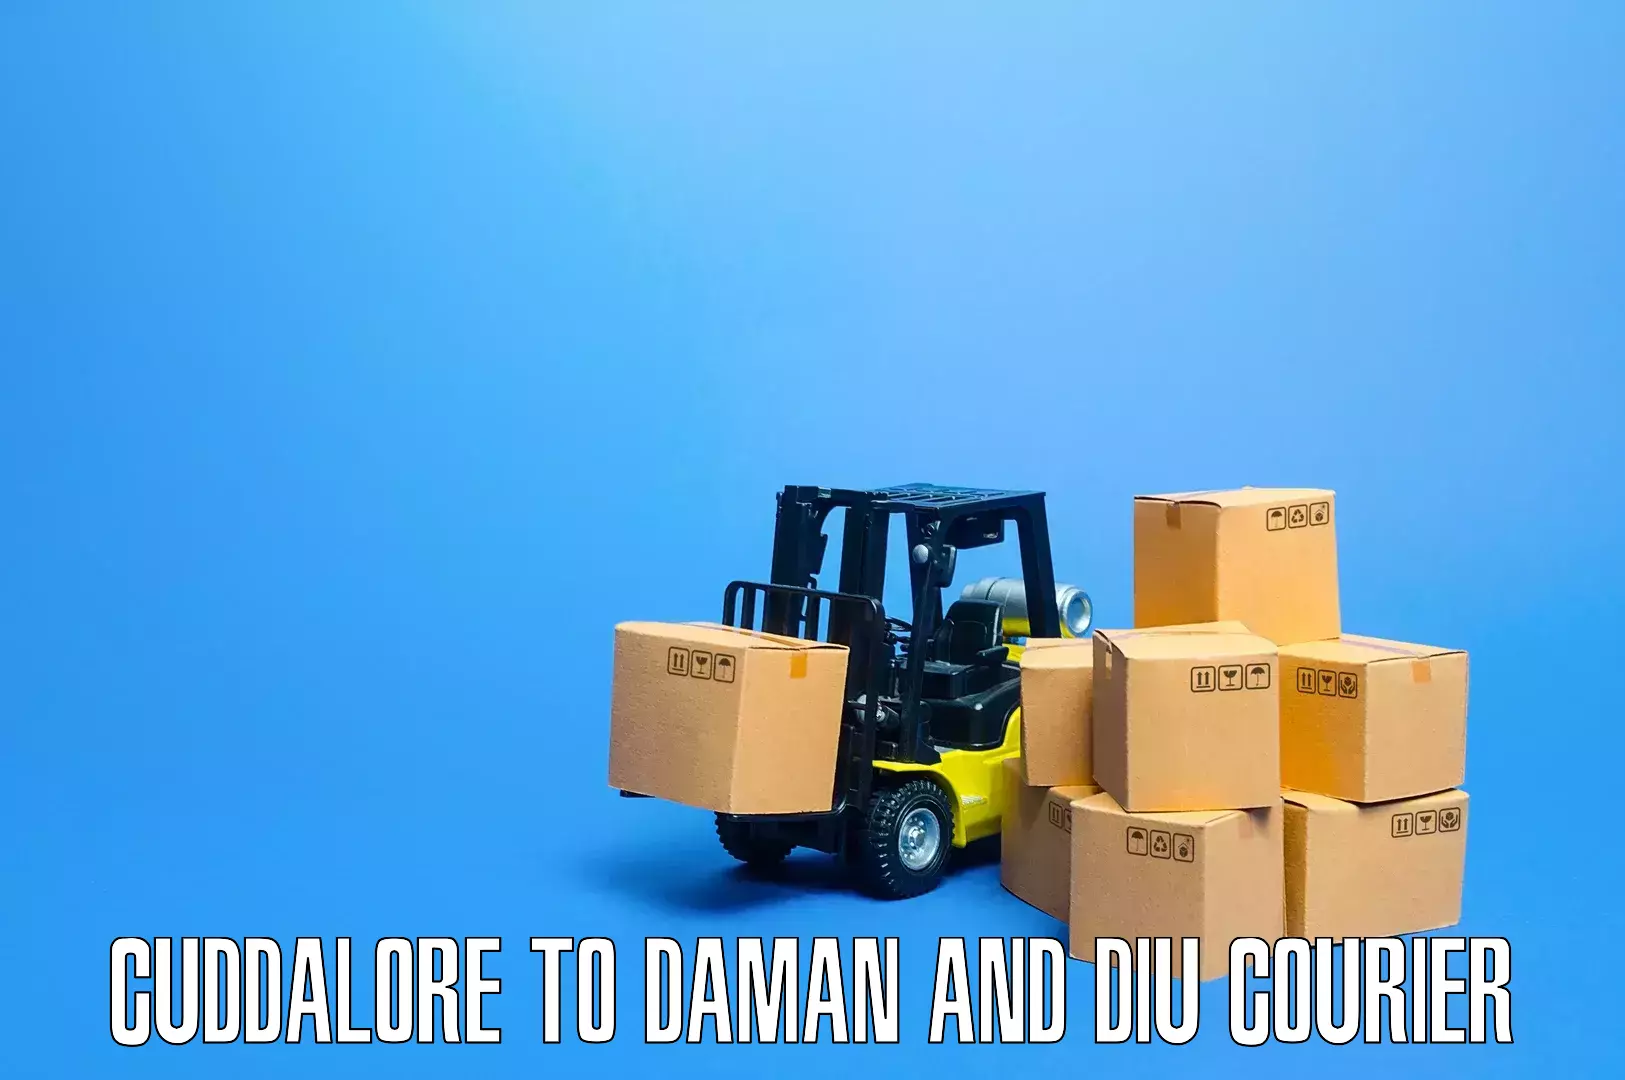 Skilled furniture transport Cuddalore to Daman